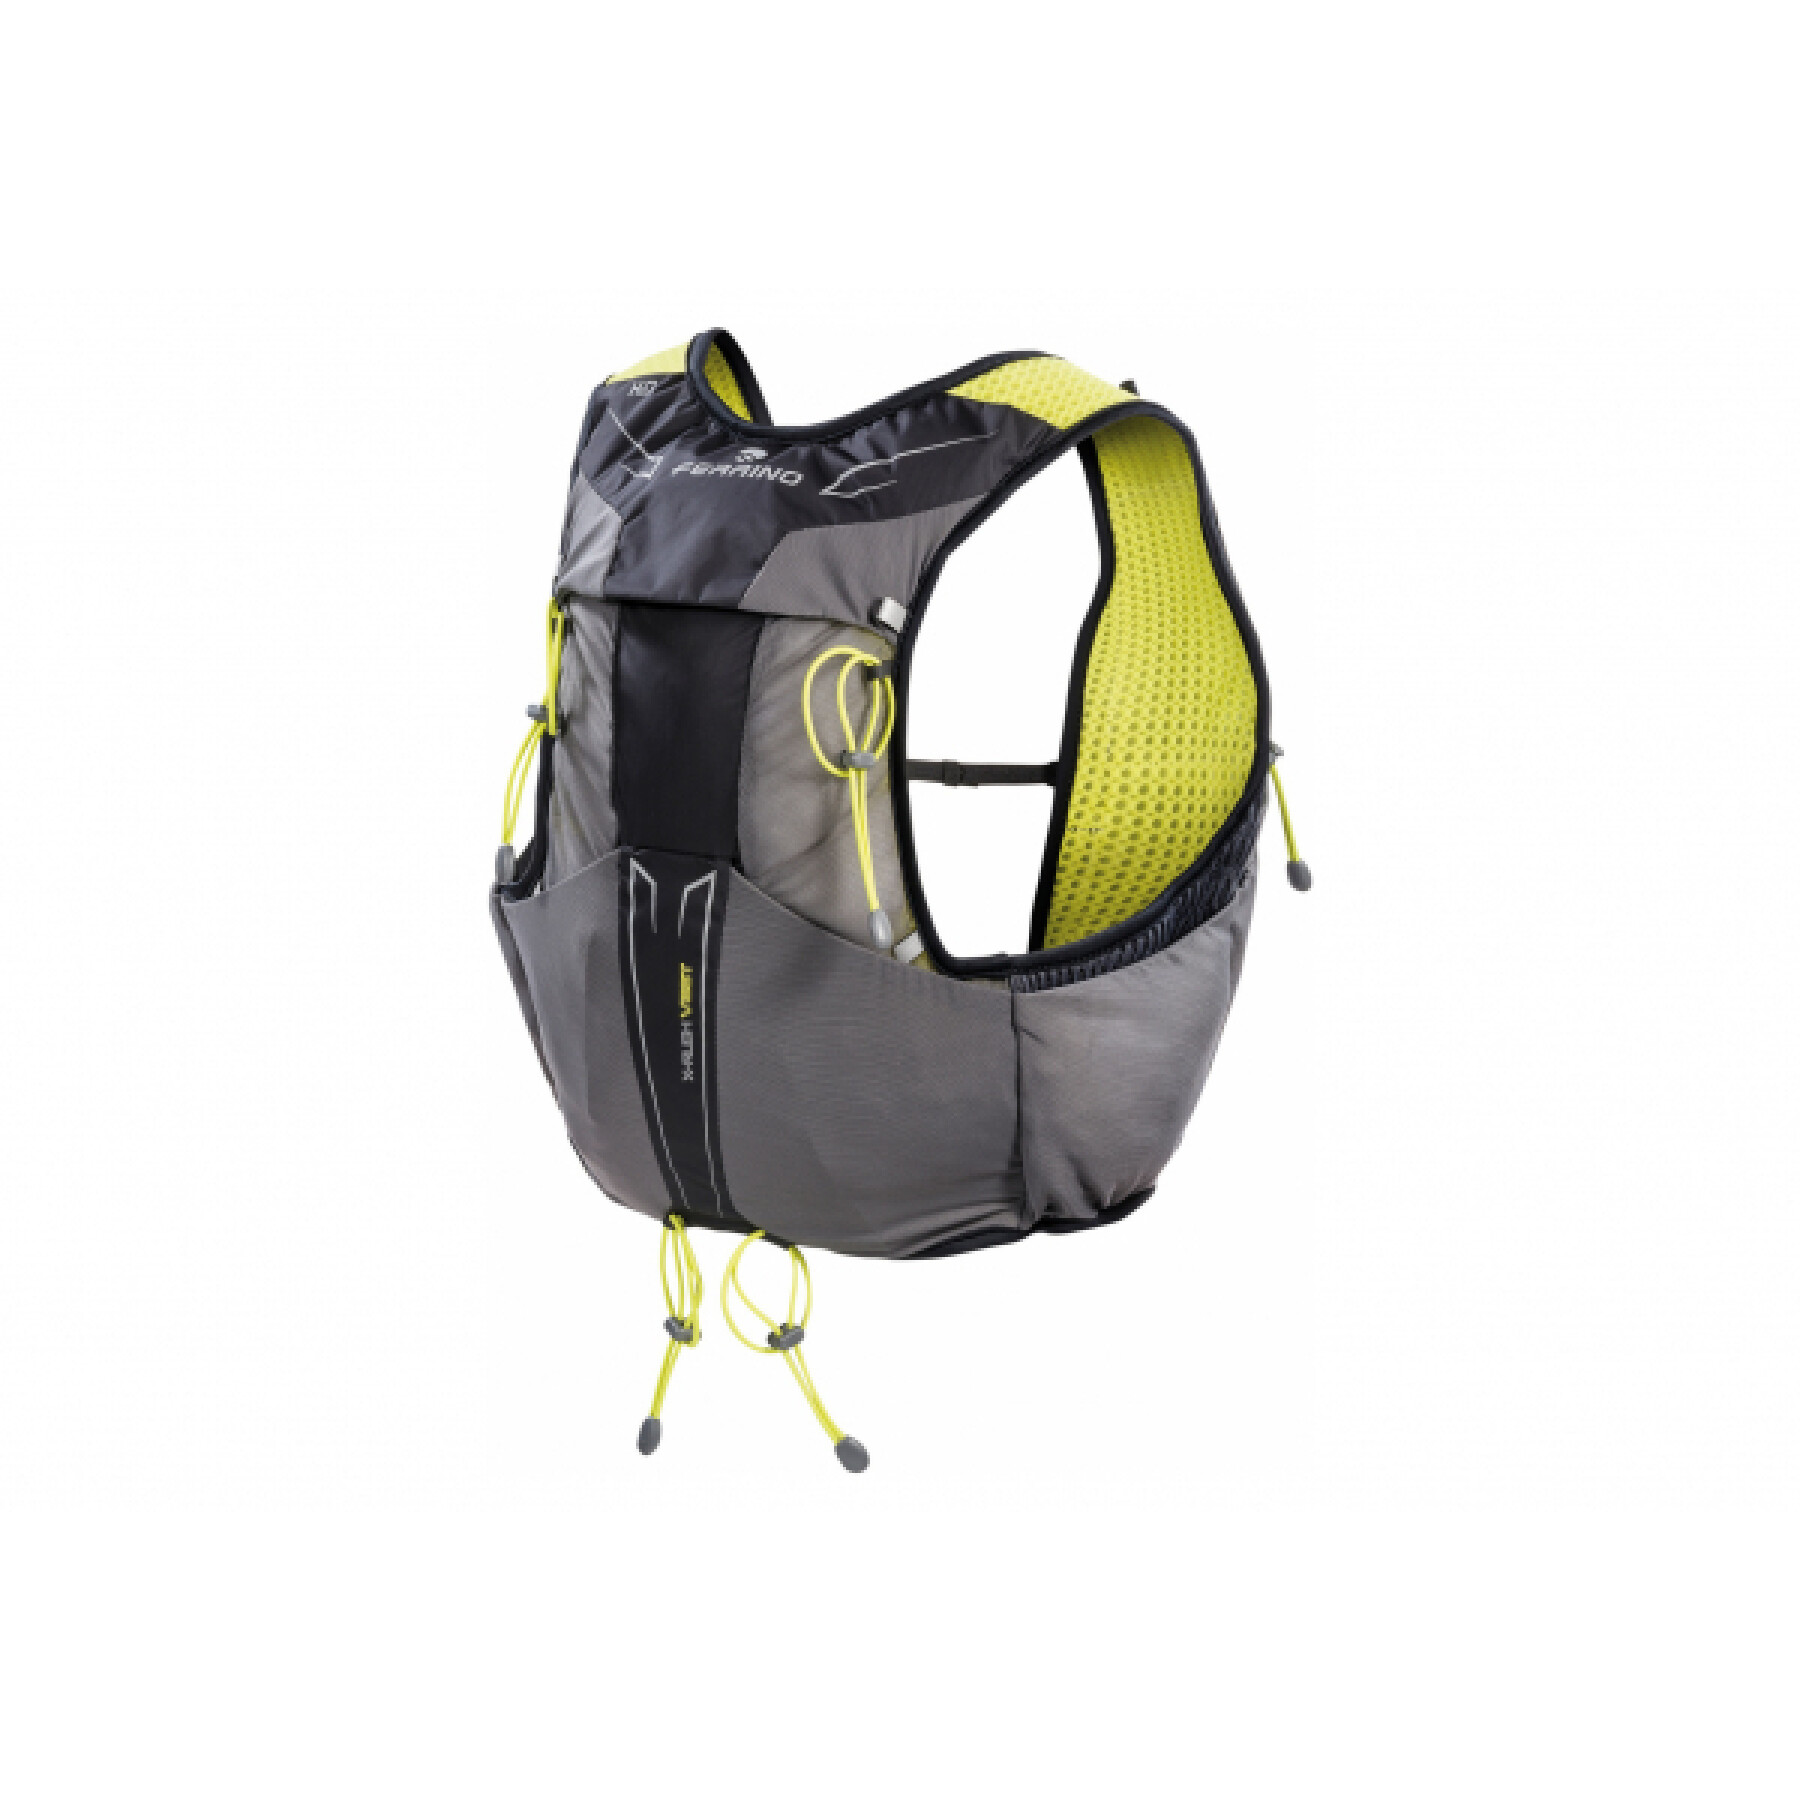 Backpack Ferrino X-rush